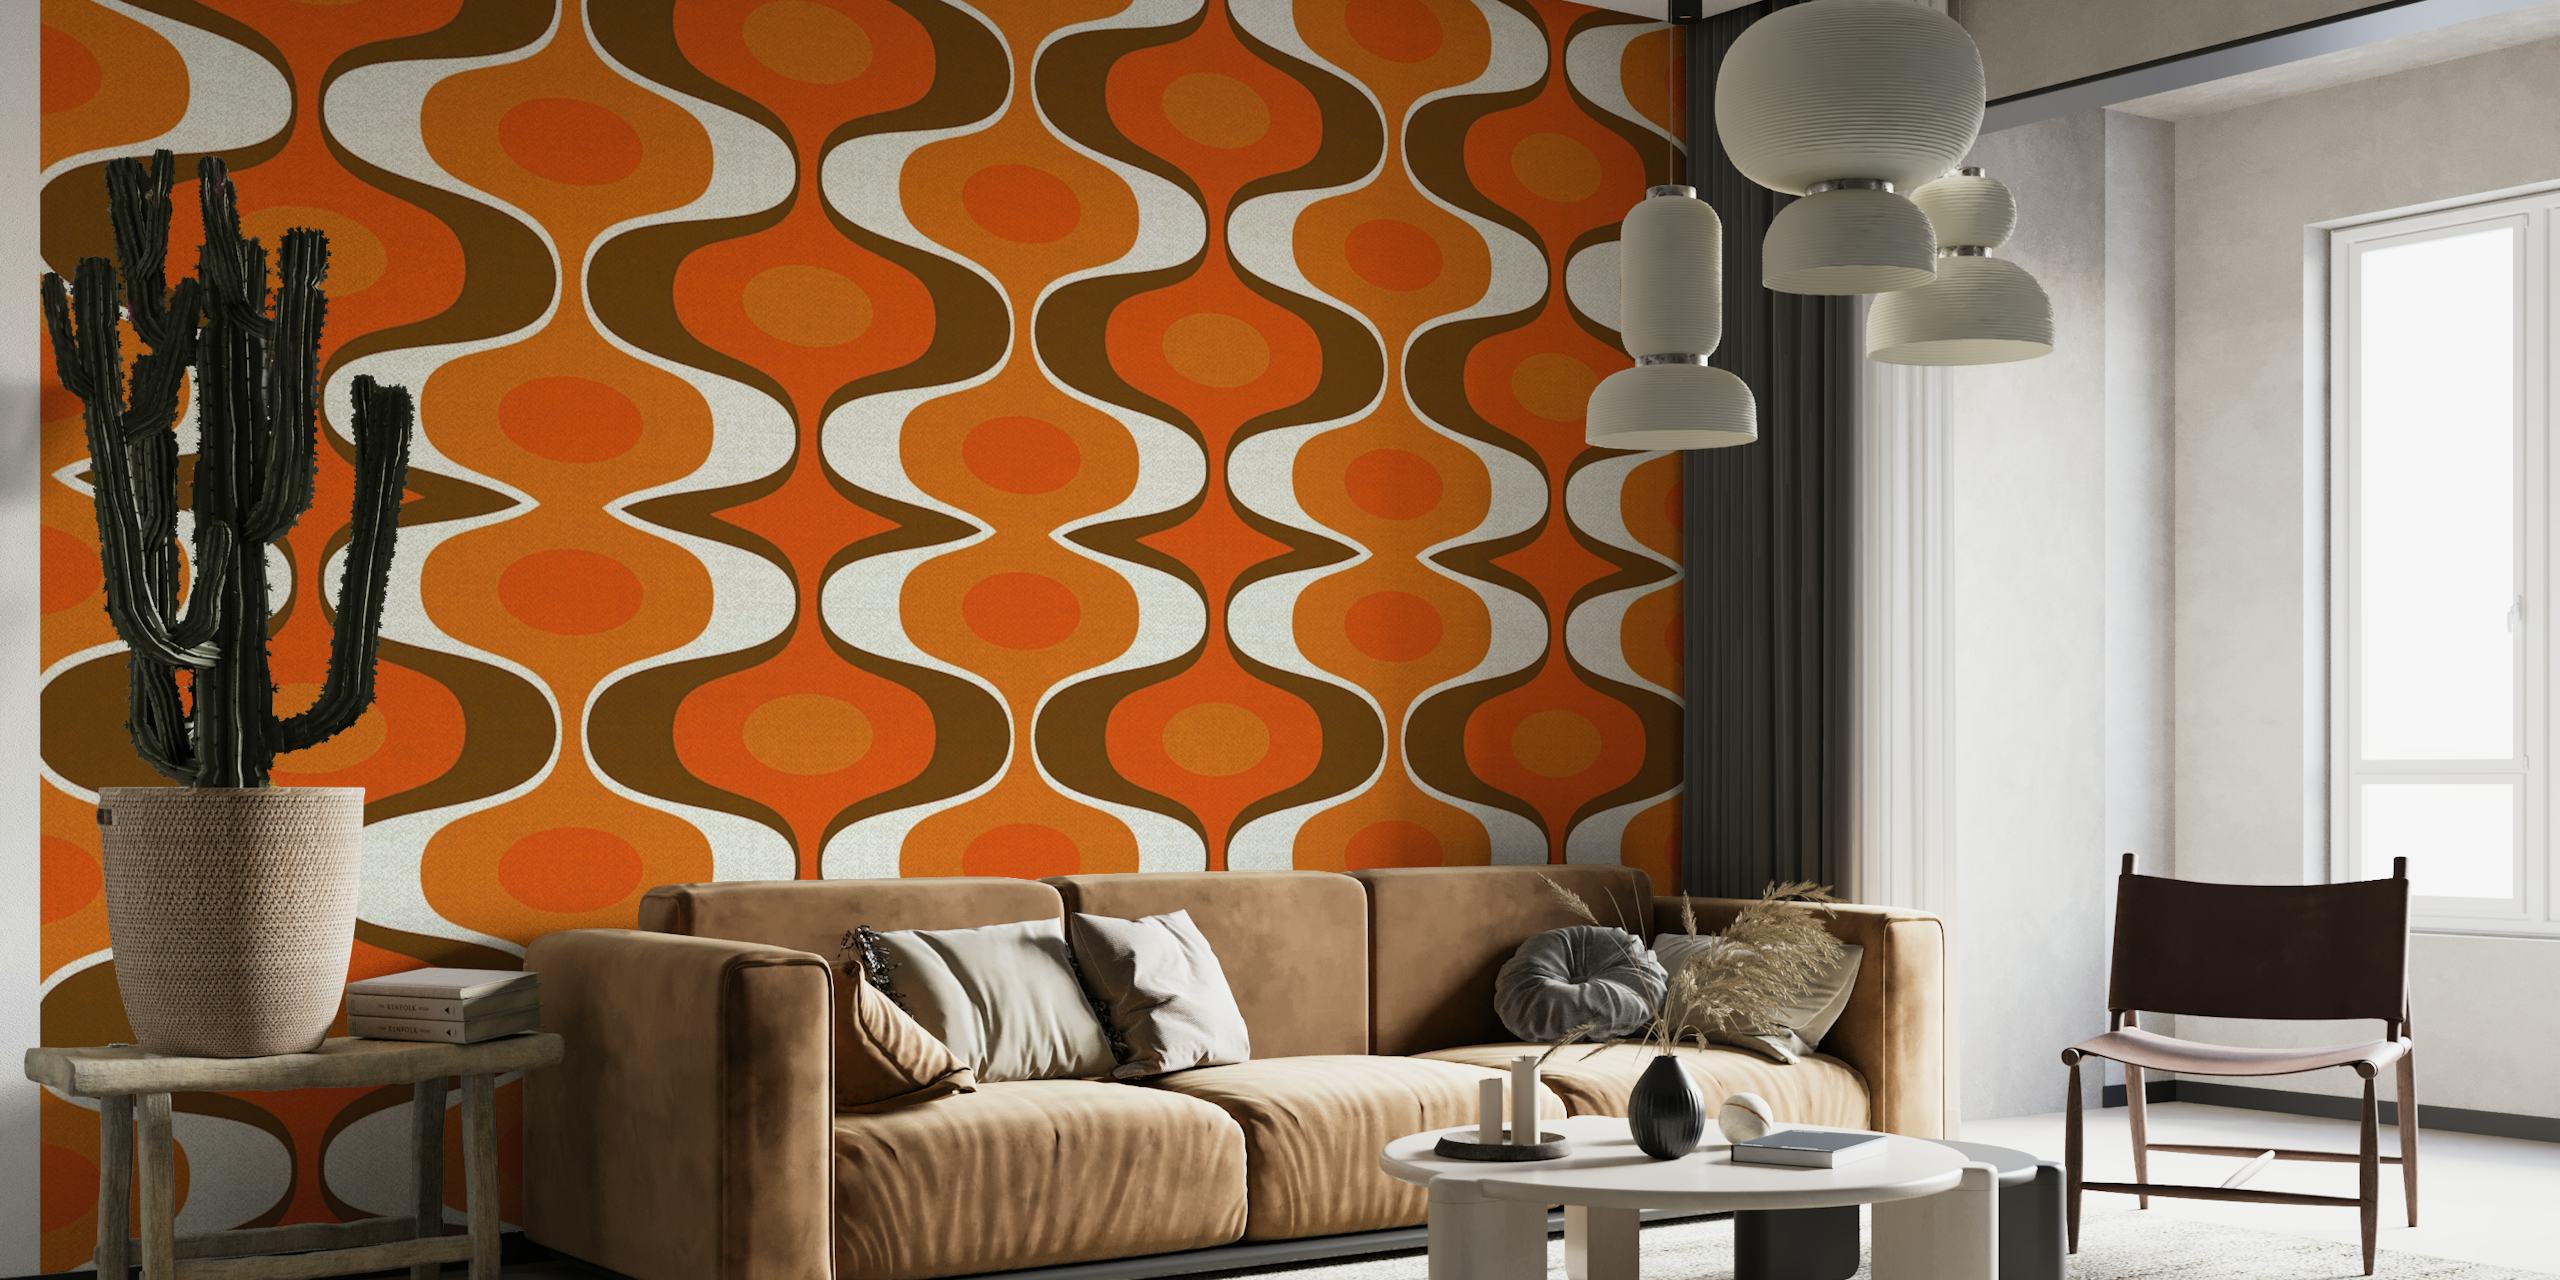 Wandbild im Vintage-Stil mit einem coolen Retro-Muster im 70er-Jahre-Stil in Orange- und Brauntönen.